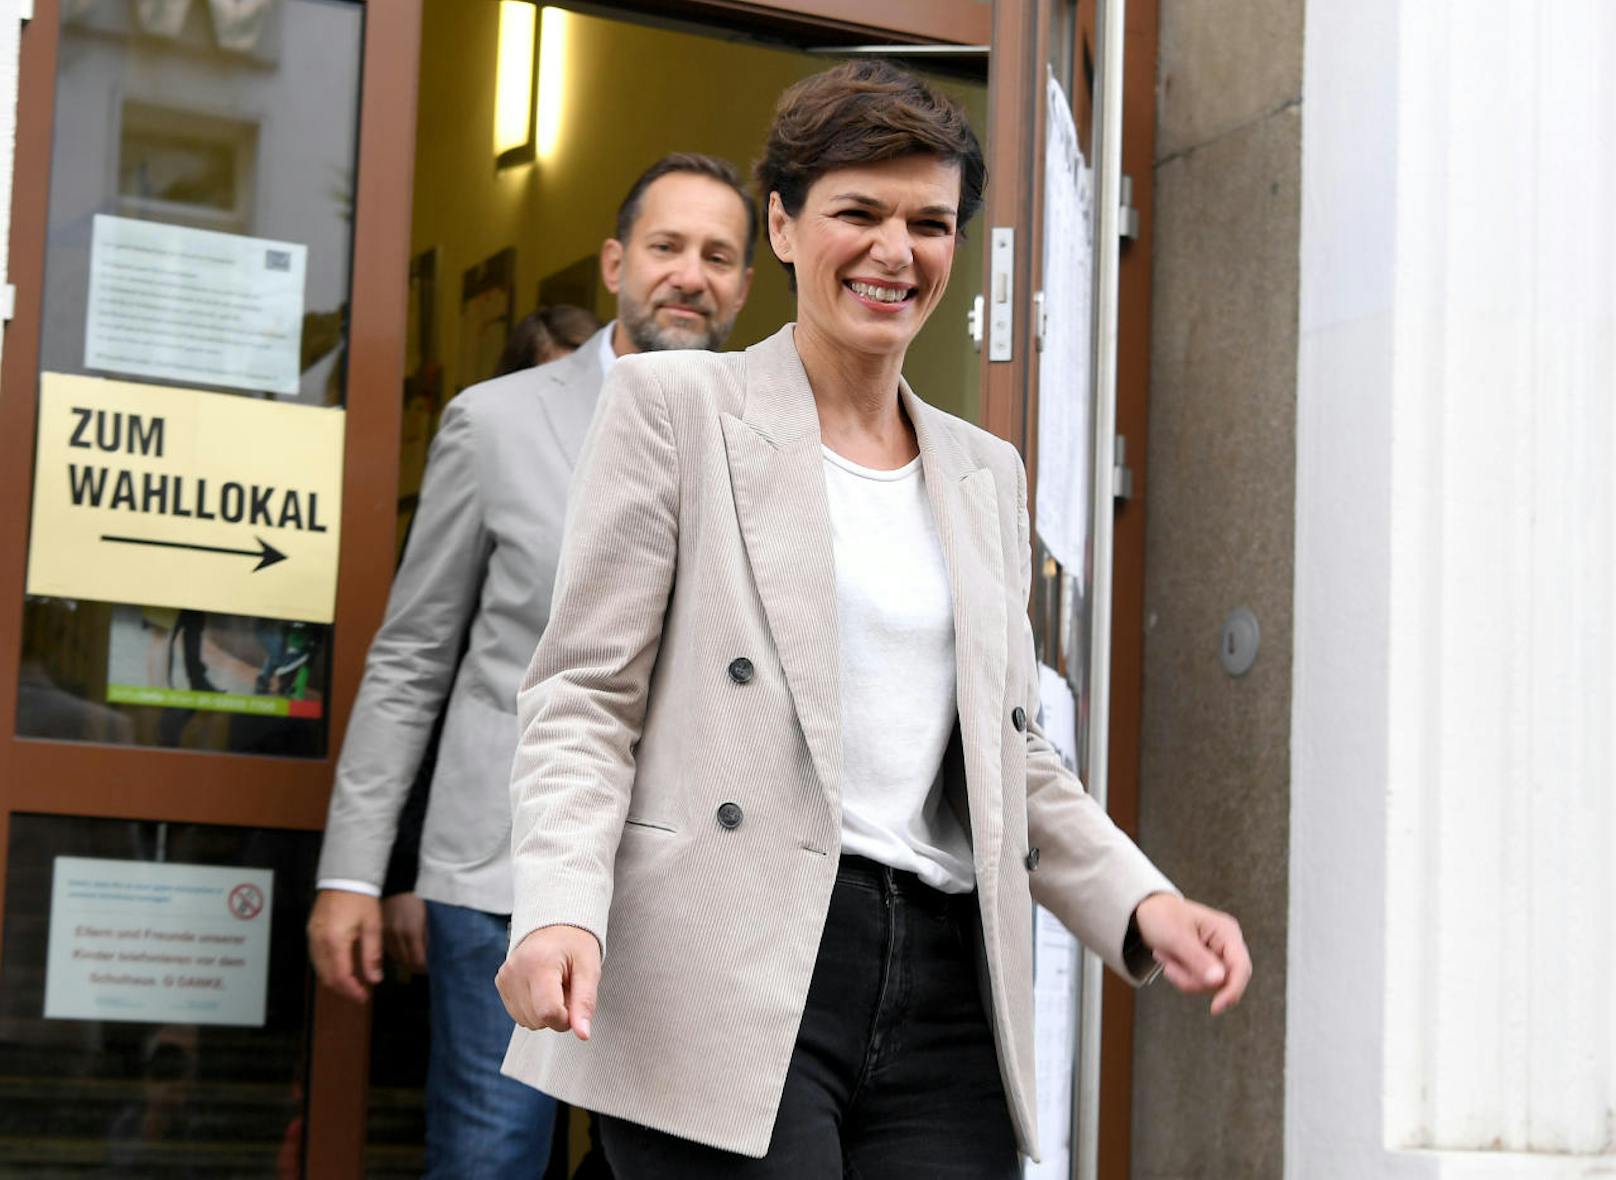 SPÖ-Spitzenkandidatin Pamela Rendi-Wagner mit Ehemann Michael Rendi nach ihrer Stimmabgabe in der Wiener Volksschule Stubenbastei.